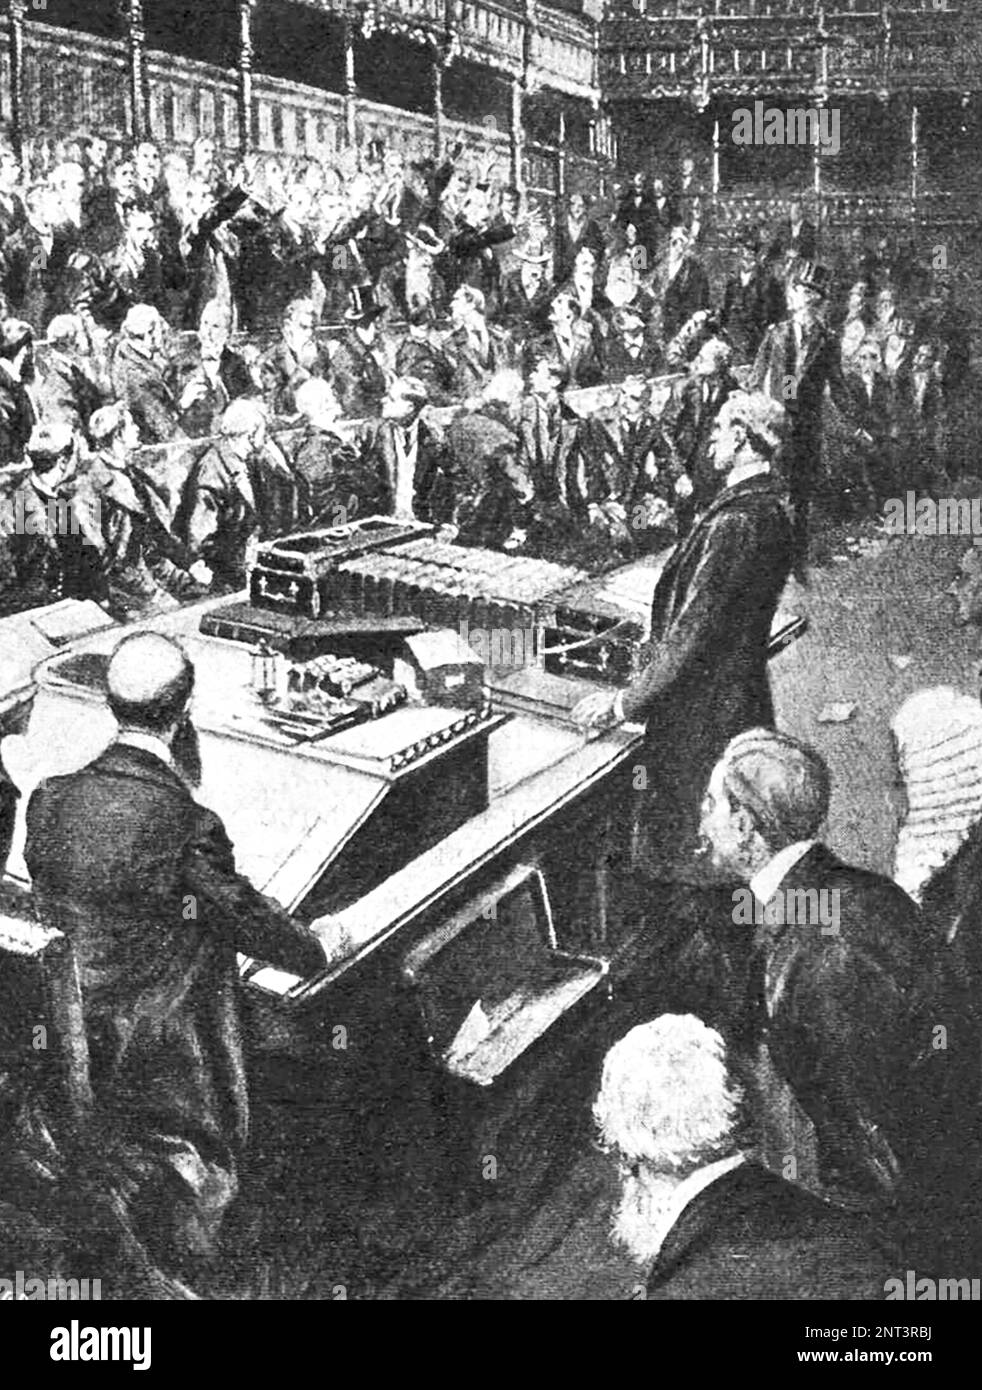 Im englischen Parlament begrüßen die irischen Abgeordneten freudig die Nachricht über den Sieg der Boers und die Gefangennahme von General Methuen. Abbildung von 1902. Stockfoto